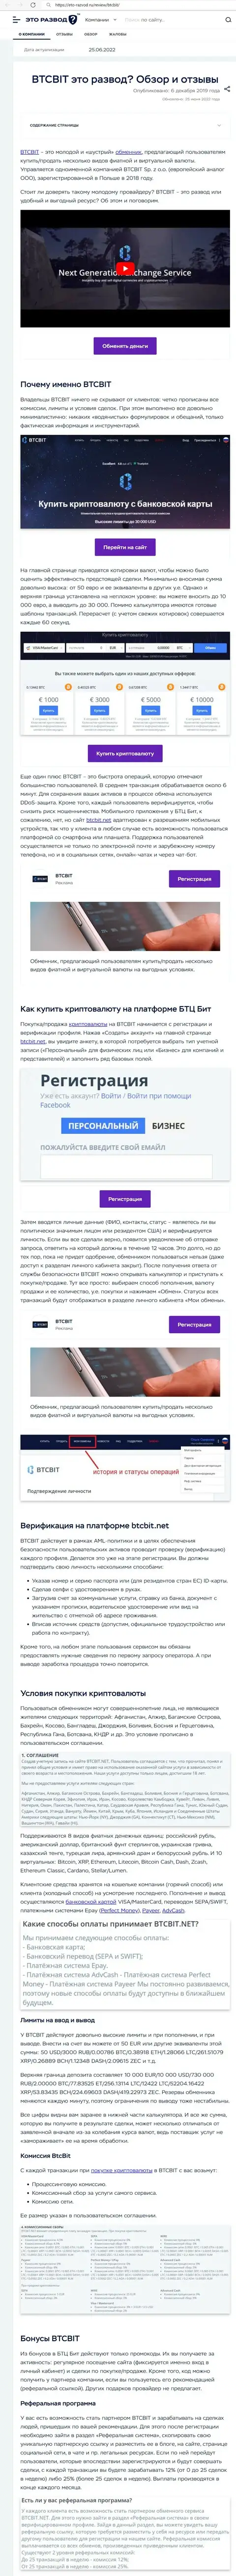 Обзор деятельности и условия предоставления услуг онлайн обменника BTC Bit в публикации на сервисе eto razvod ru